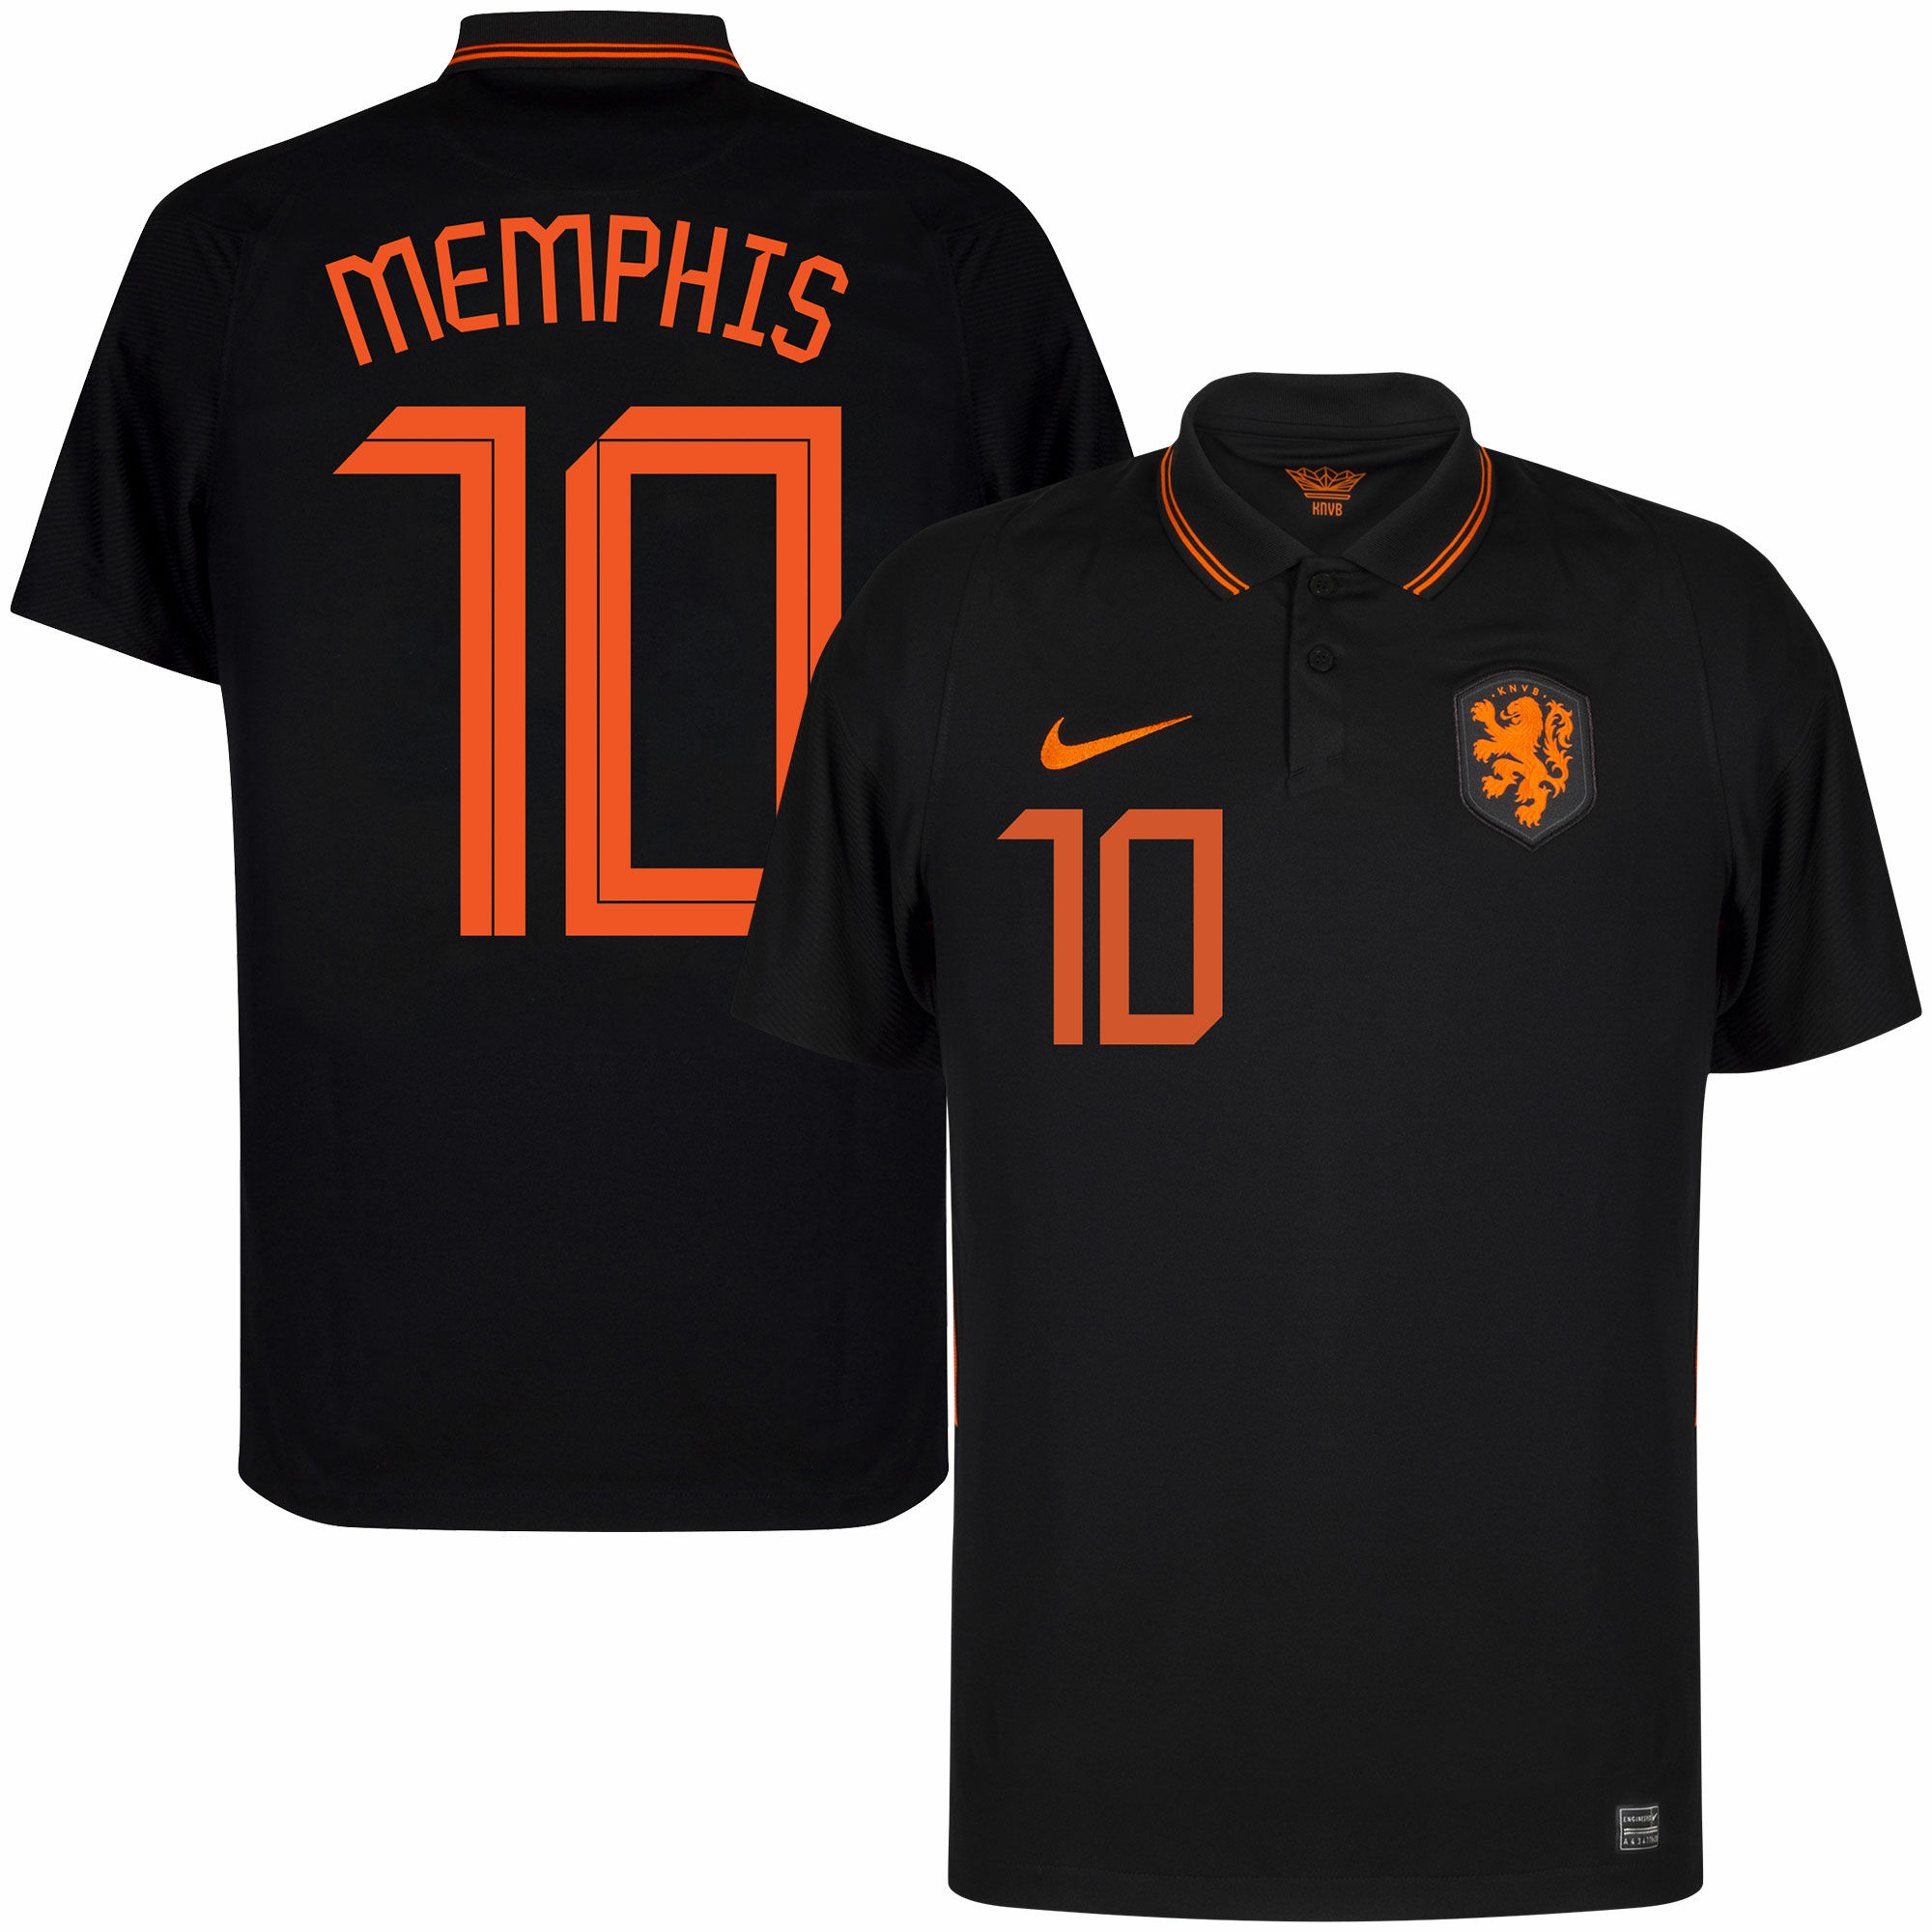 Nizozemí - Dres fotbalový - fan potisk, černý, sezóna 2020/21, číslo 10, Memphis Depay, venkovní